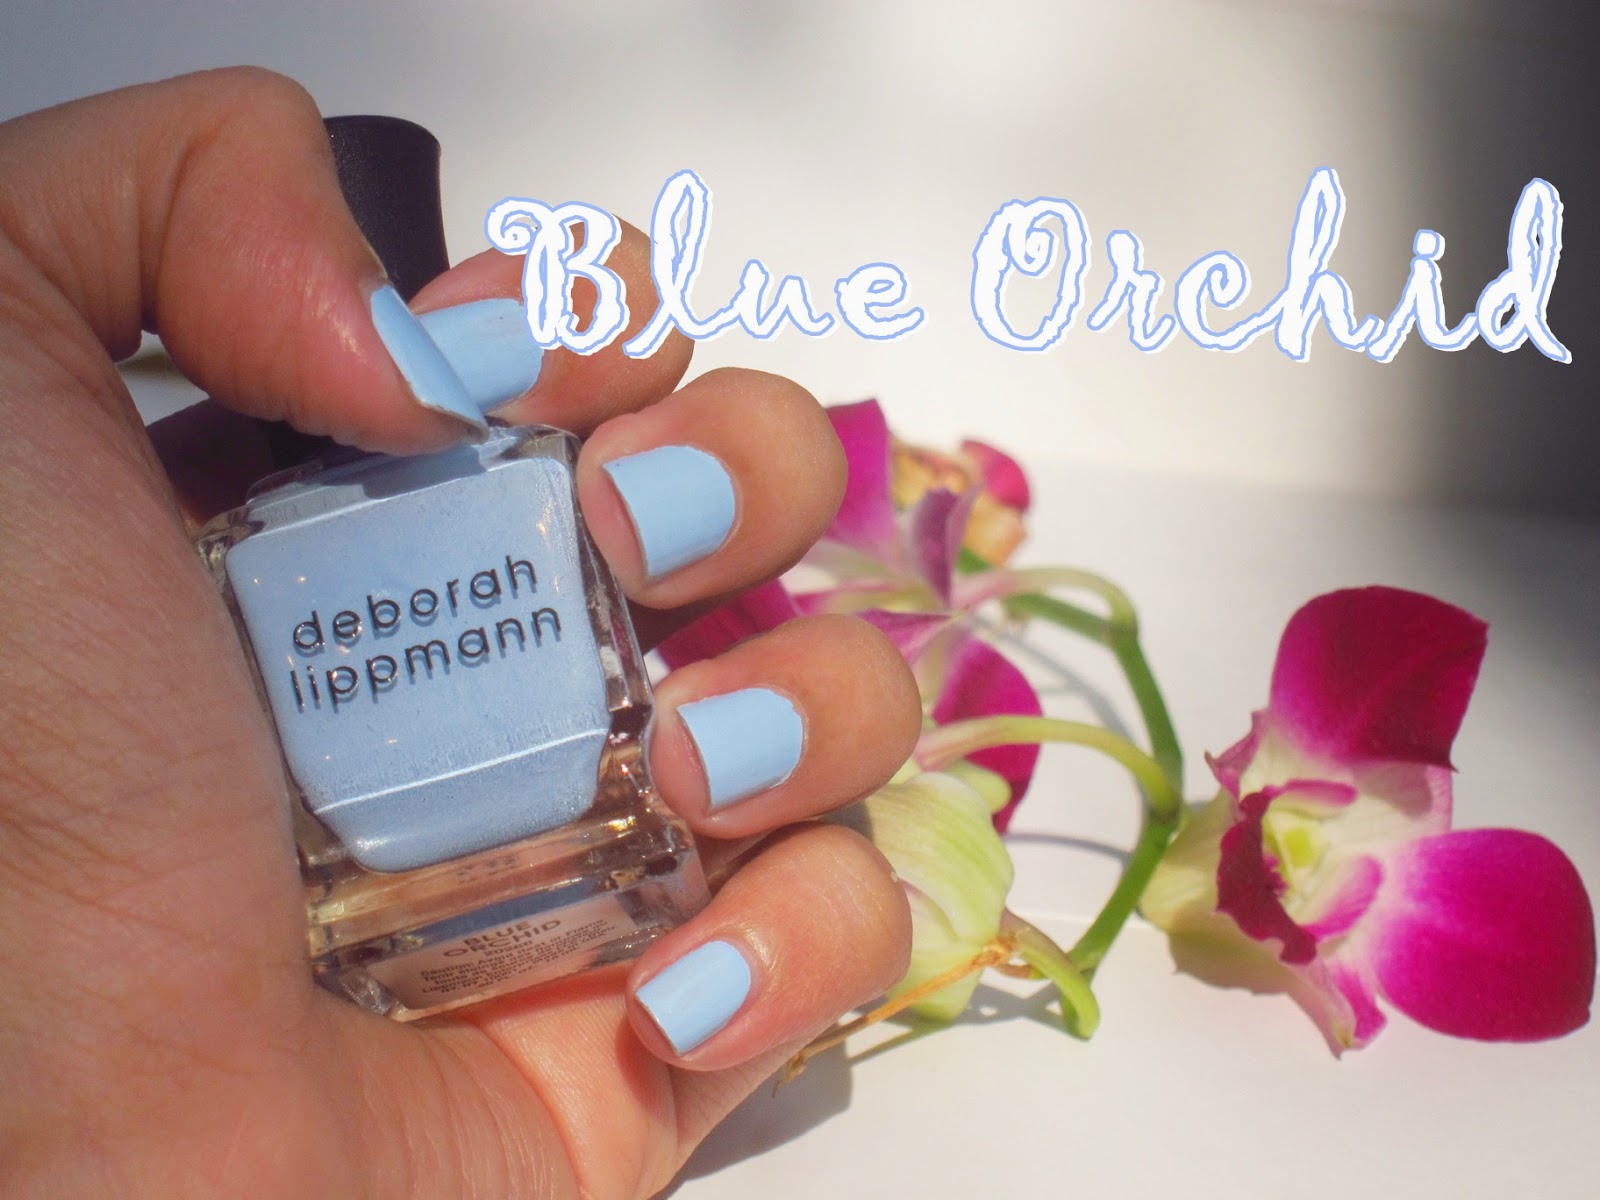 Deborah Lippmann Blue Orchid Nail Color - wide 7